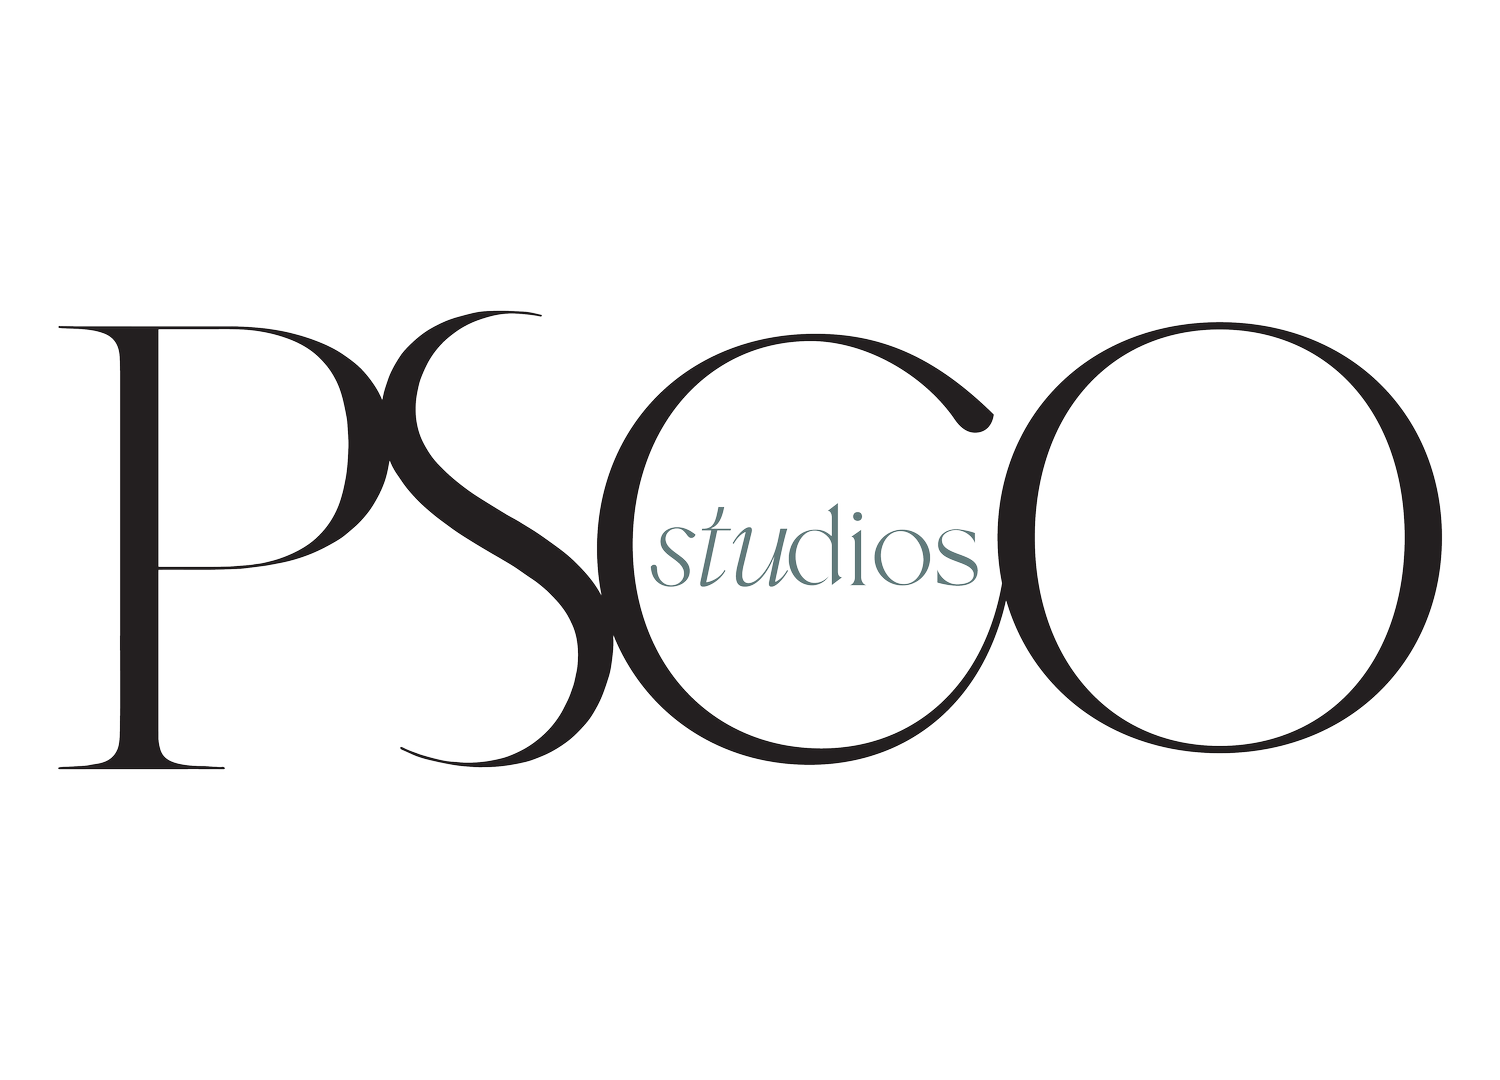 PSCO Studios